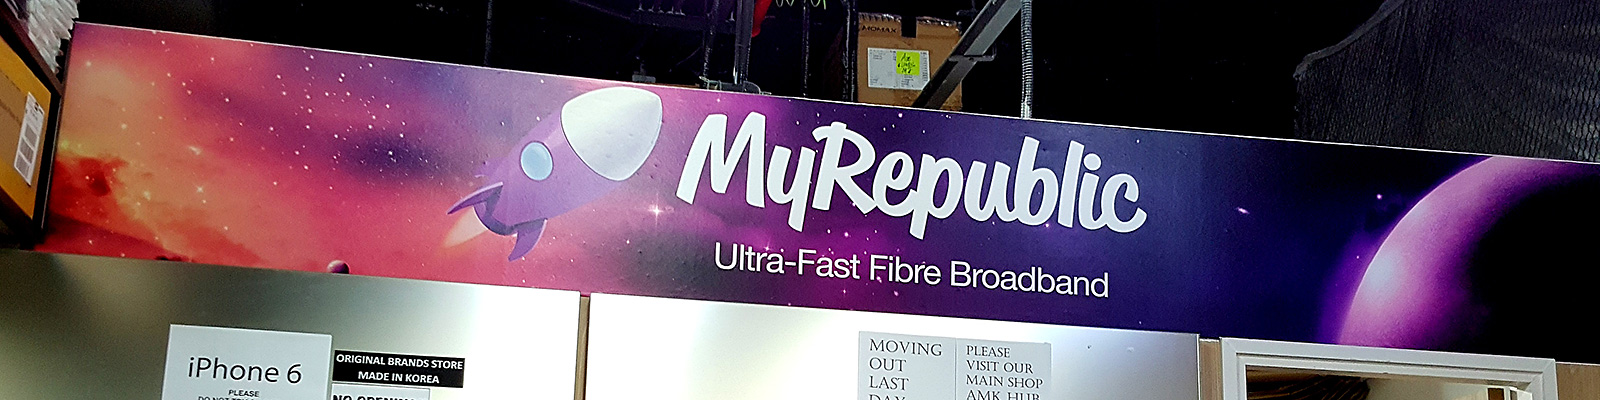 シンガポールで新規参入を狙うMyRepublicが4G LTEトライアルを実施